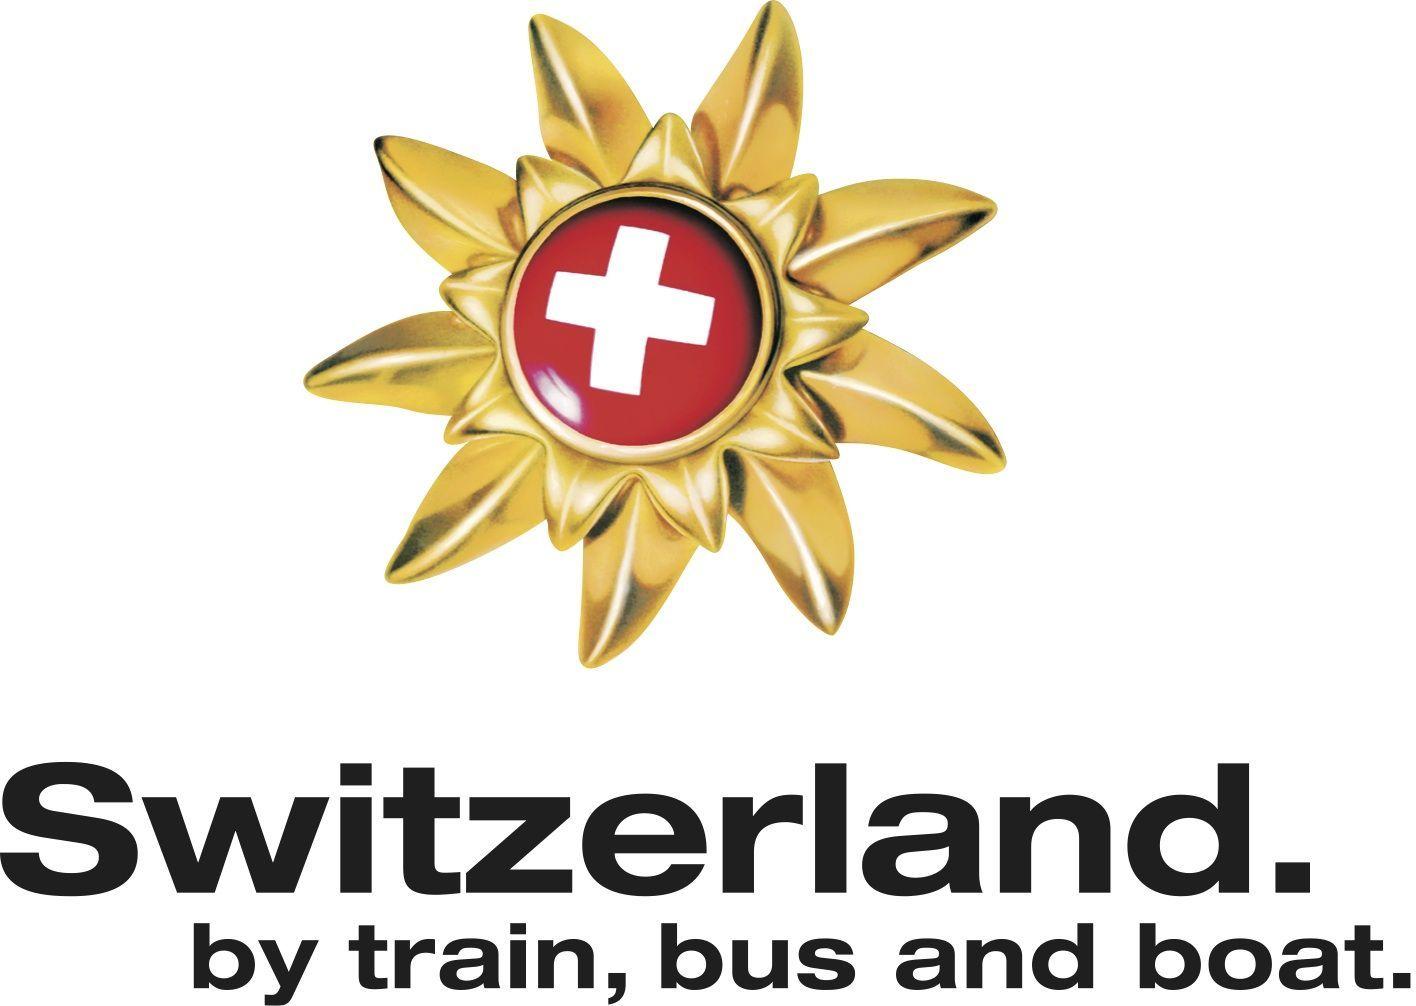 Switzerland Logo - First Swiss Travel Pass SuperStar winners announced ·ETB Travel News ...